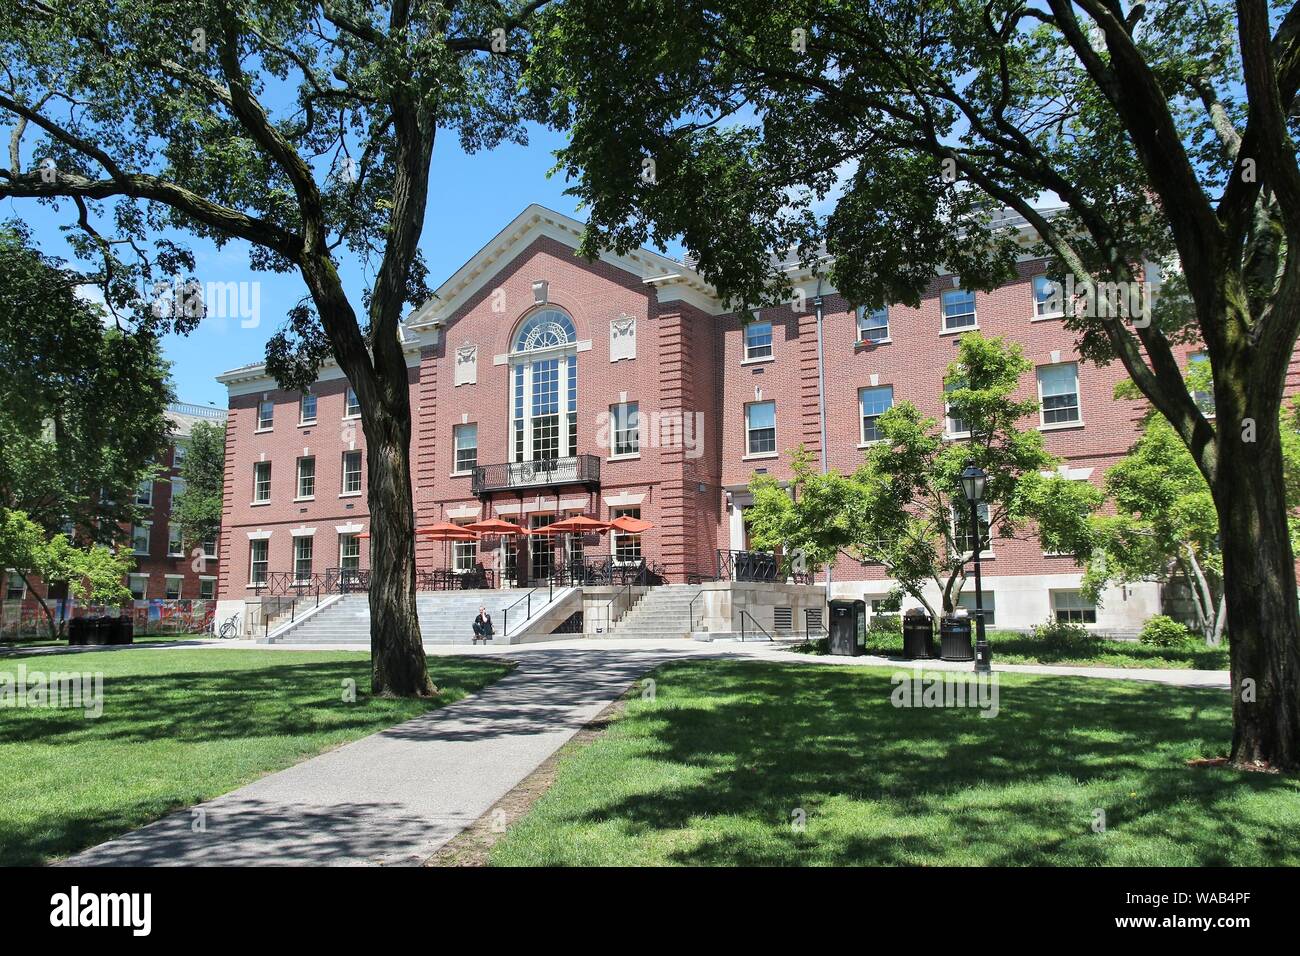 La provvidenza, Stati Uniti d'America - 8 giugno 2013: Persona visite Brown University campus di Providence, Rhode Island. Brown è uno dei più prestigiosi Ivy League private Foto Stock